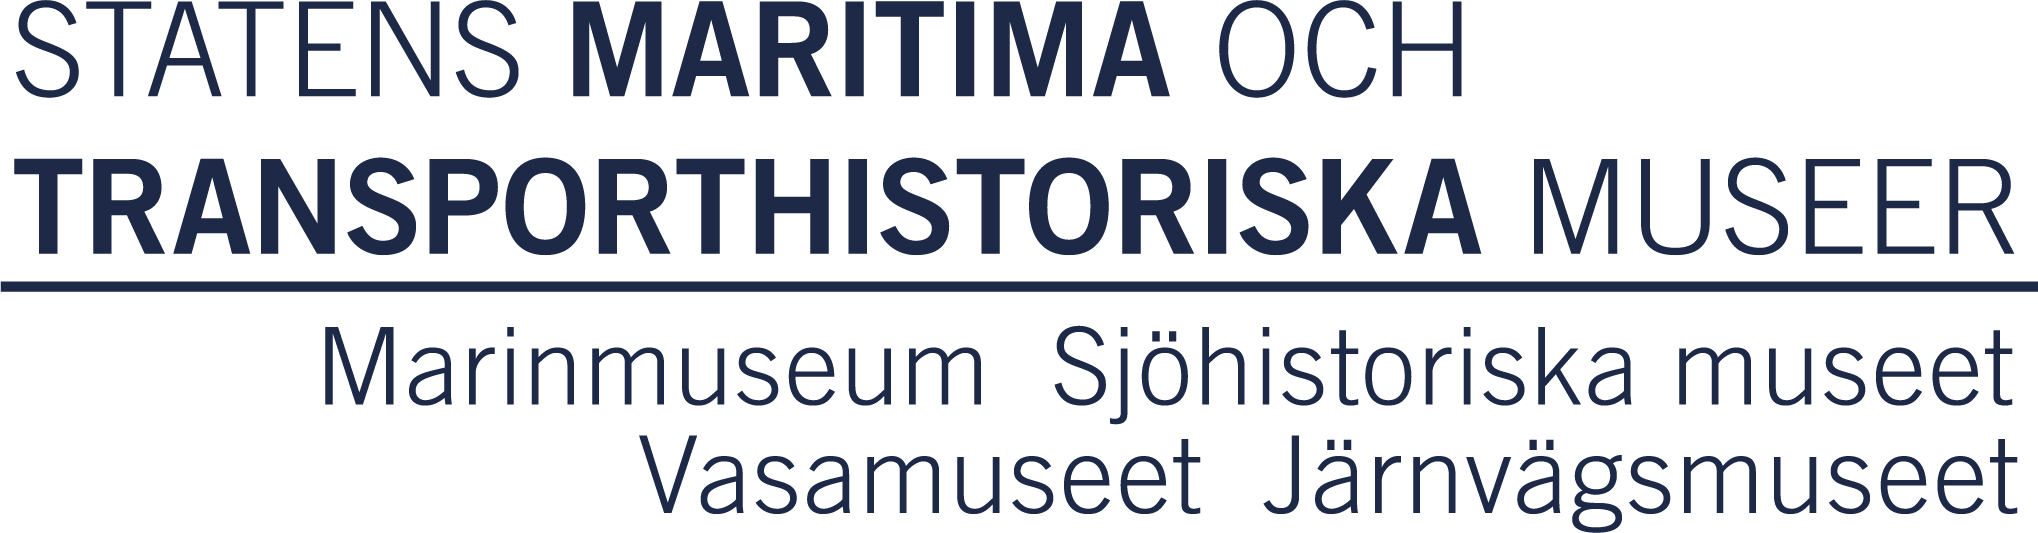 SMTM: Statens maritima och transporthistoriska museer